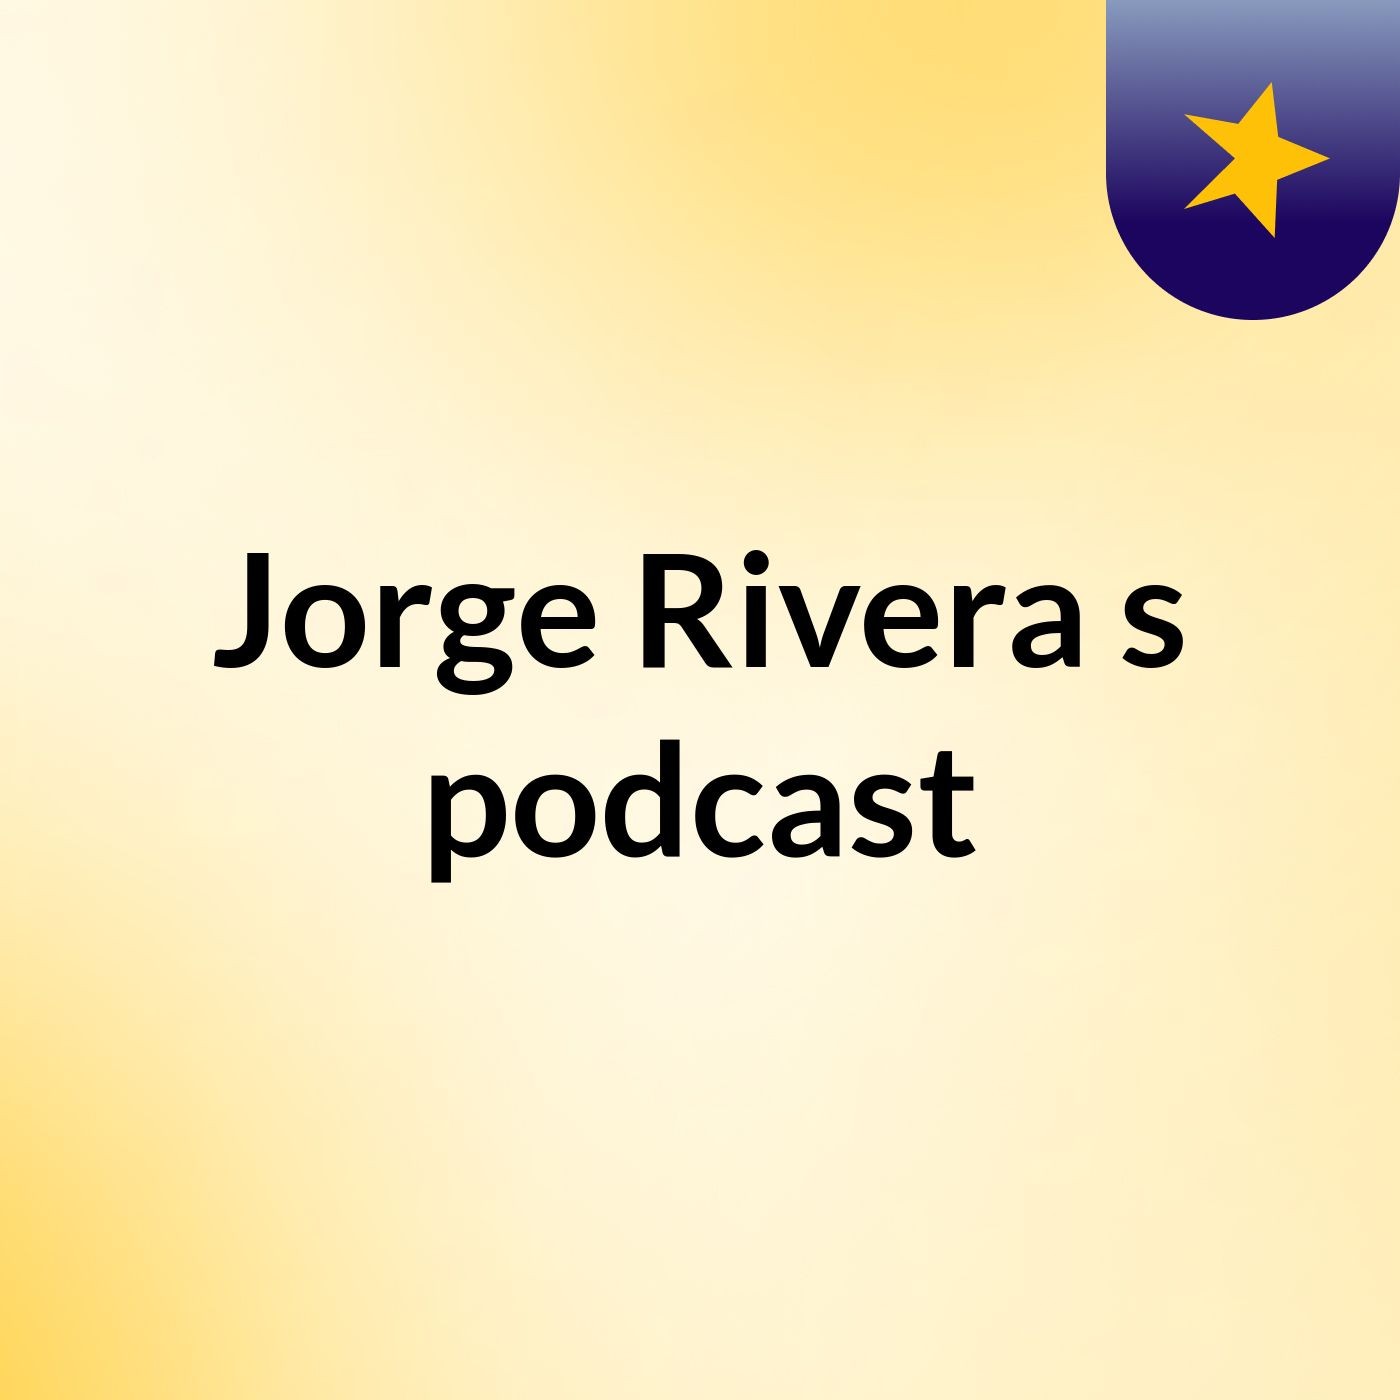 Jorge Rivera's podcast